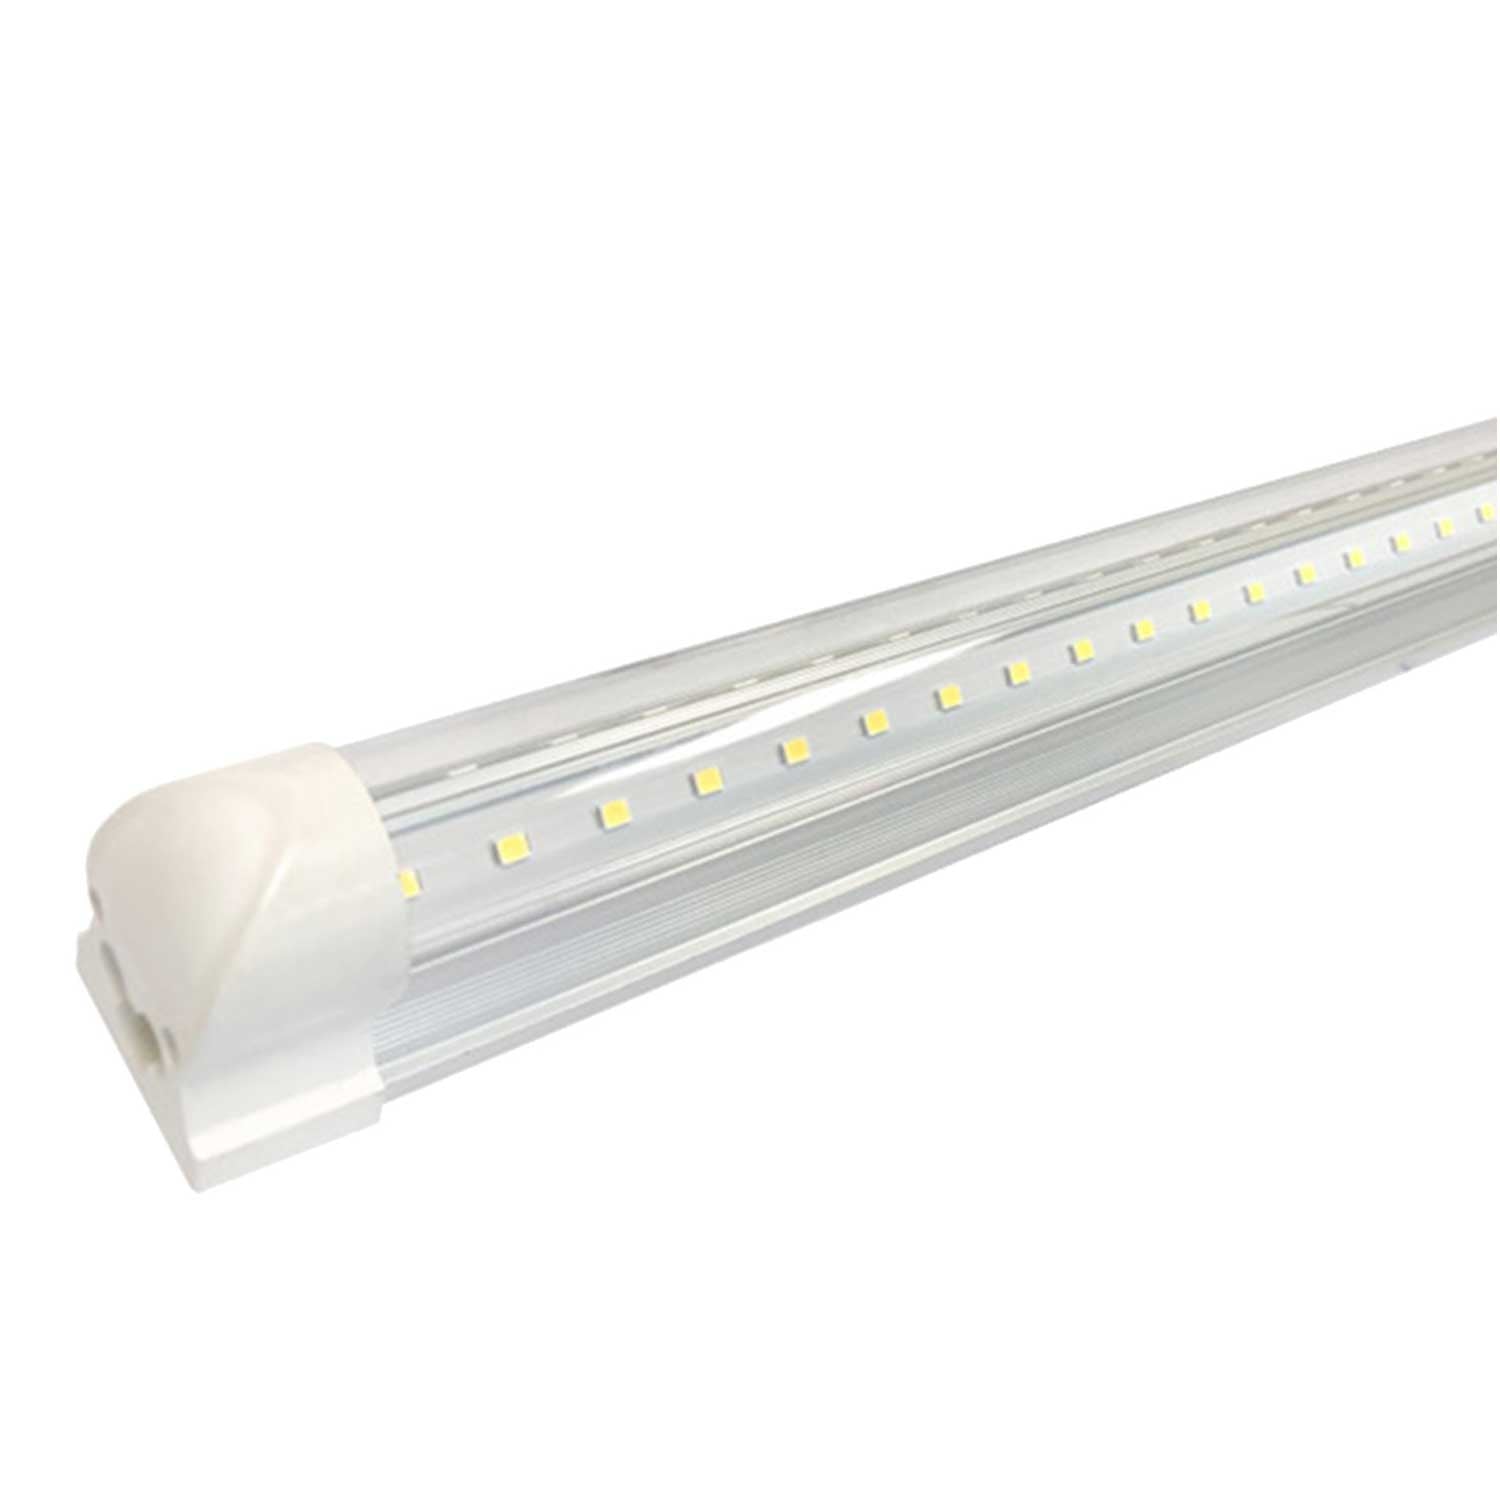 Luminaire LED 120cm livré avec 2 tubes TRUE-LIGHT 5500K IRC98